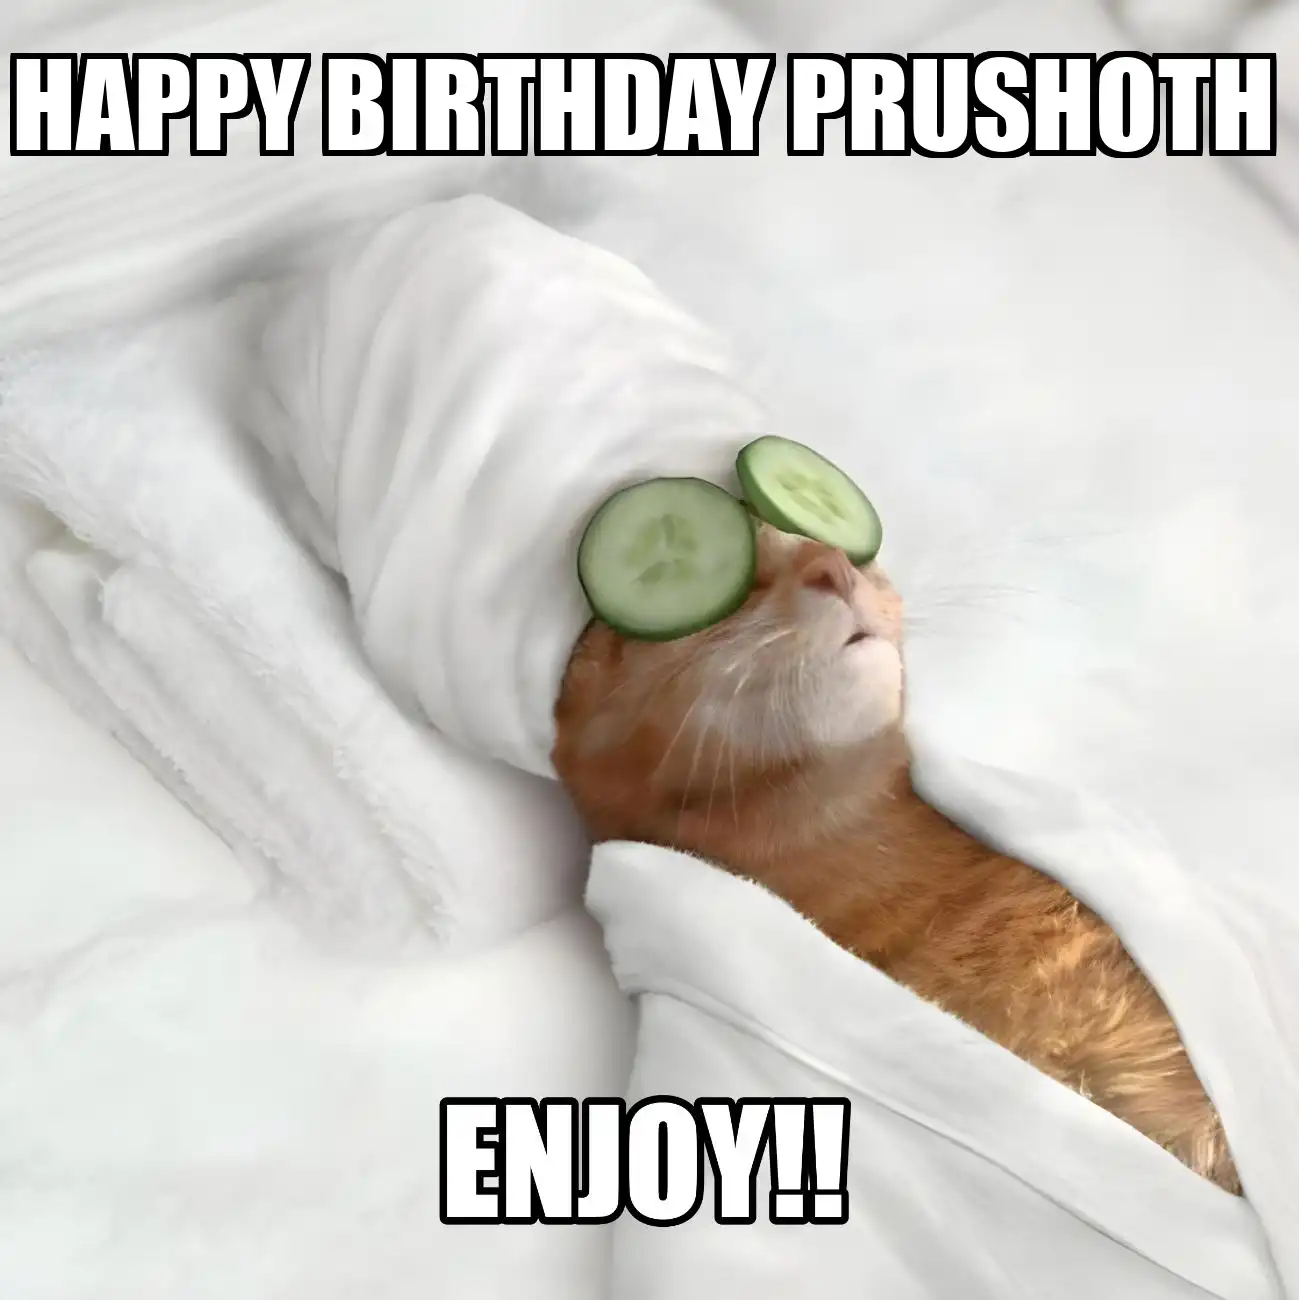 Happy Birthday Prushoth Enjoy Cat Meme